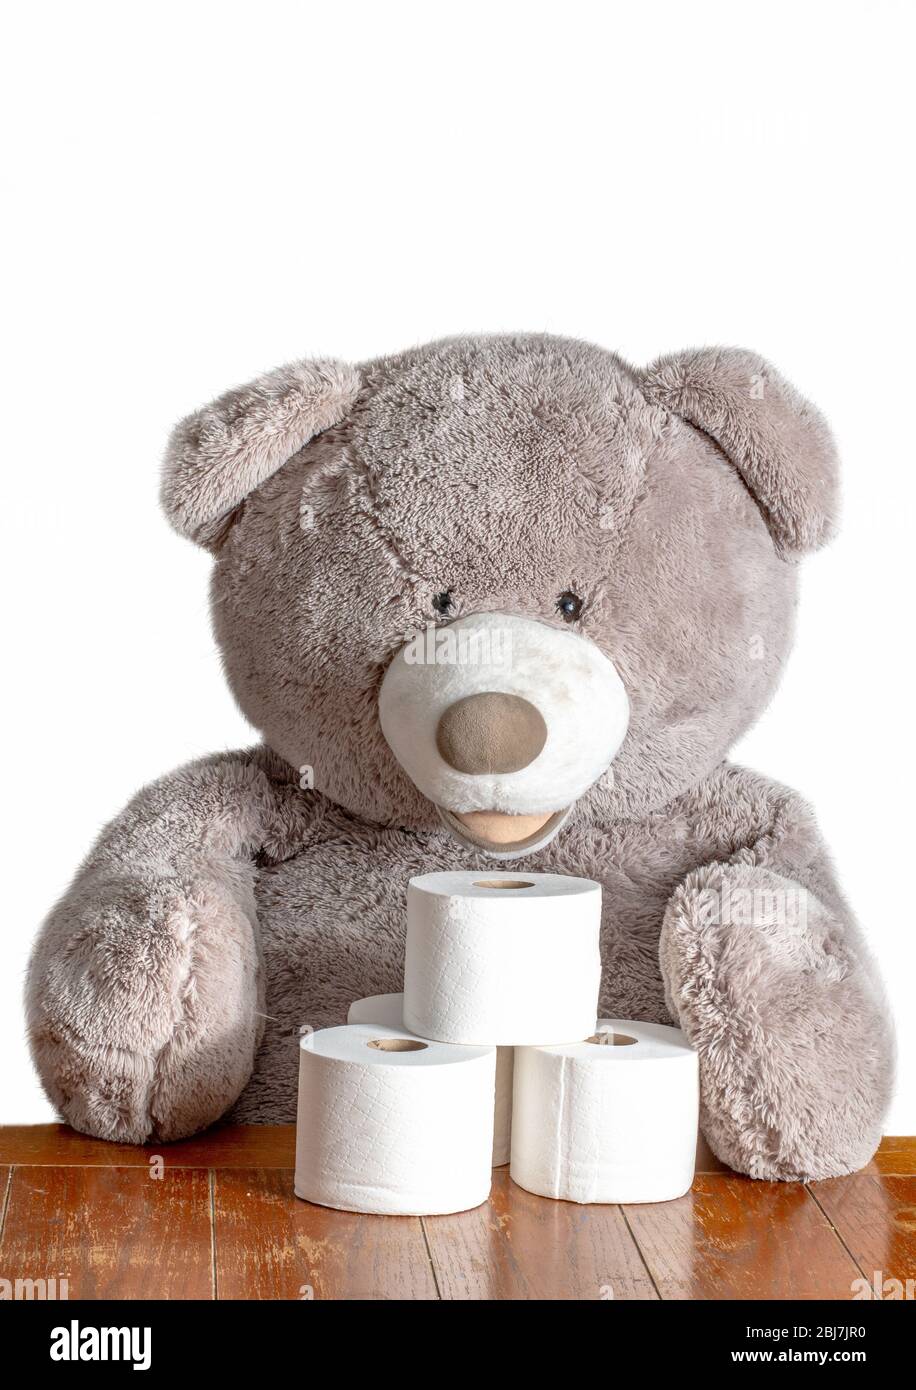 Un grand ours en peluche est assis avec des rouleaux de papier toilette, en disant à chacun d'arrêter de hoarding et de partager le TP! Banque D'Images